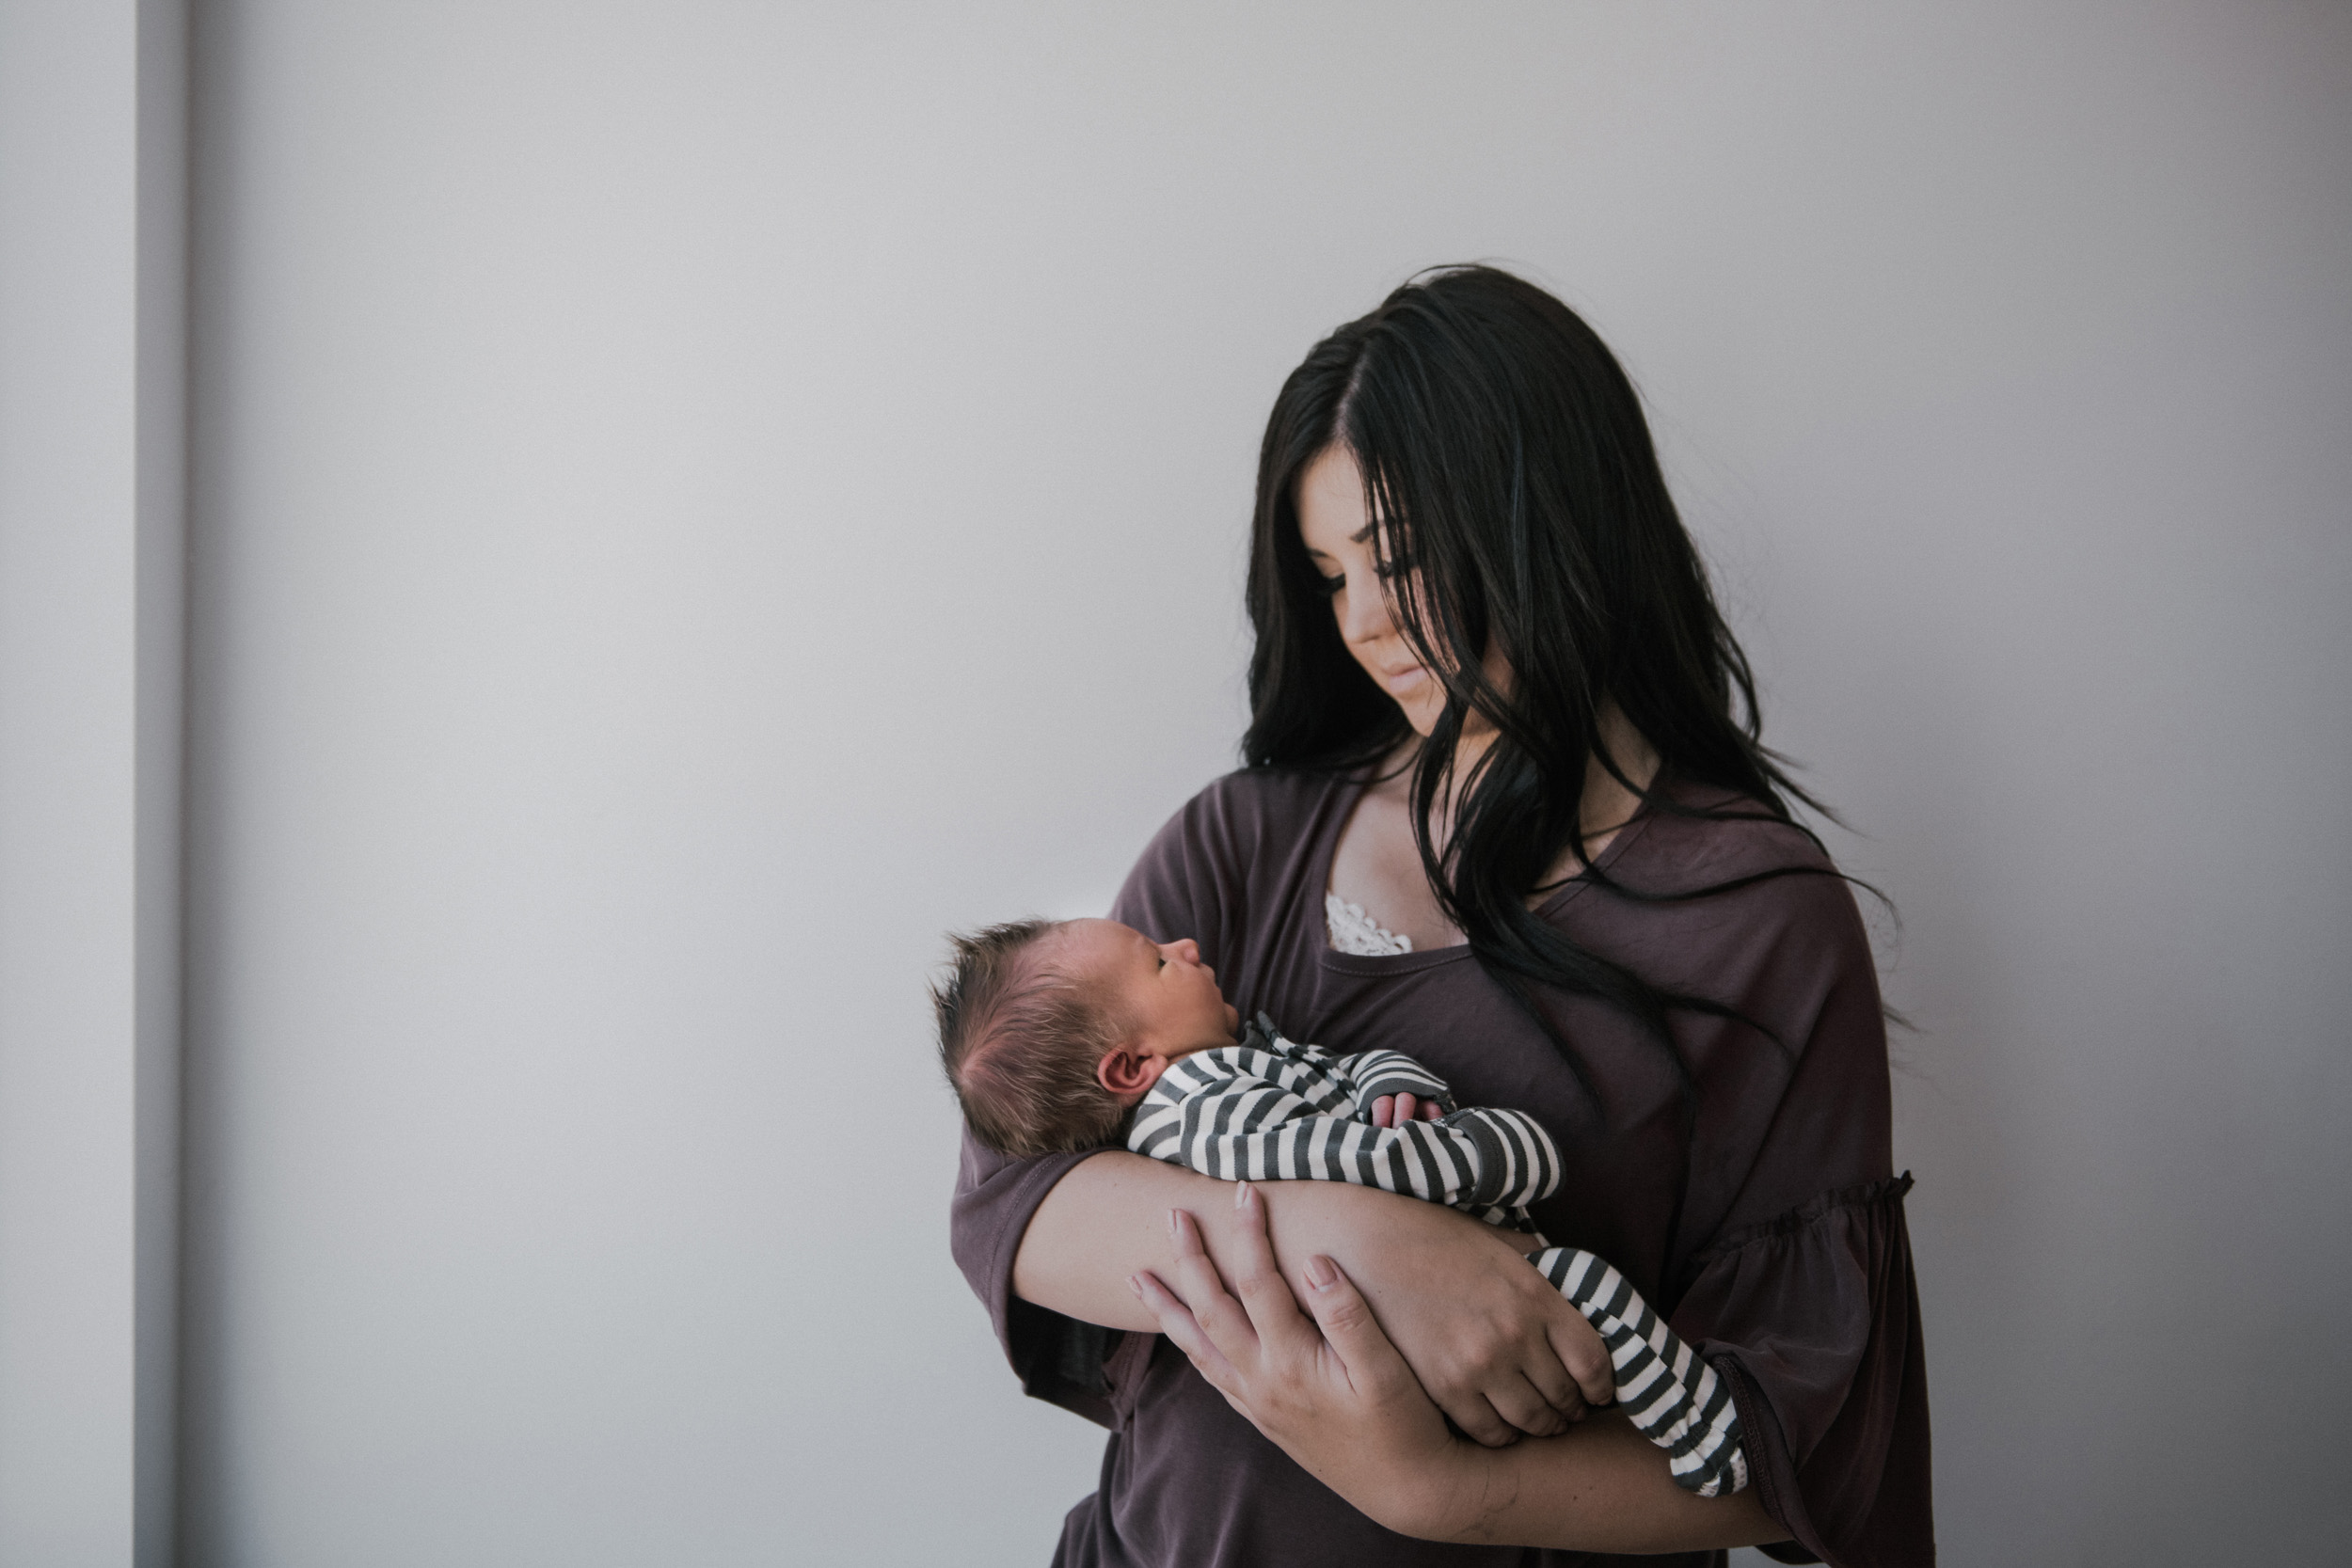 newborn boy in striped onesie being held by mom